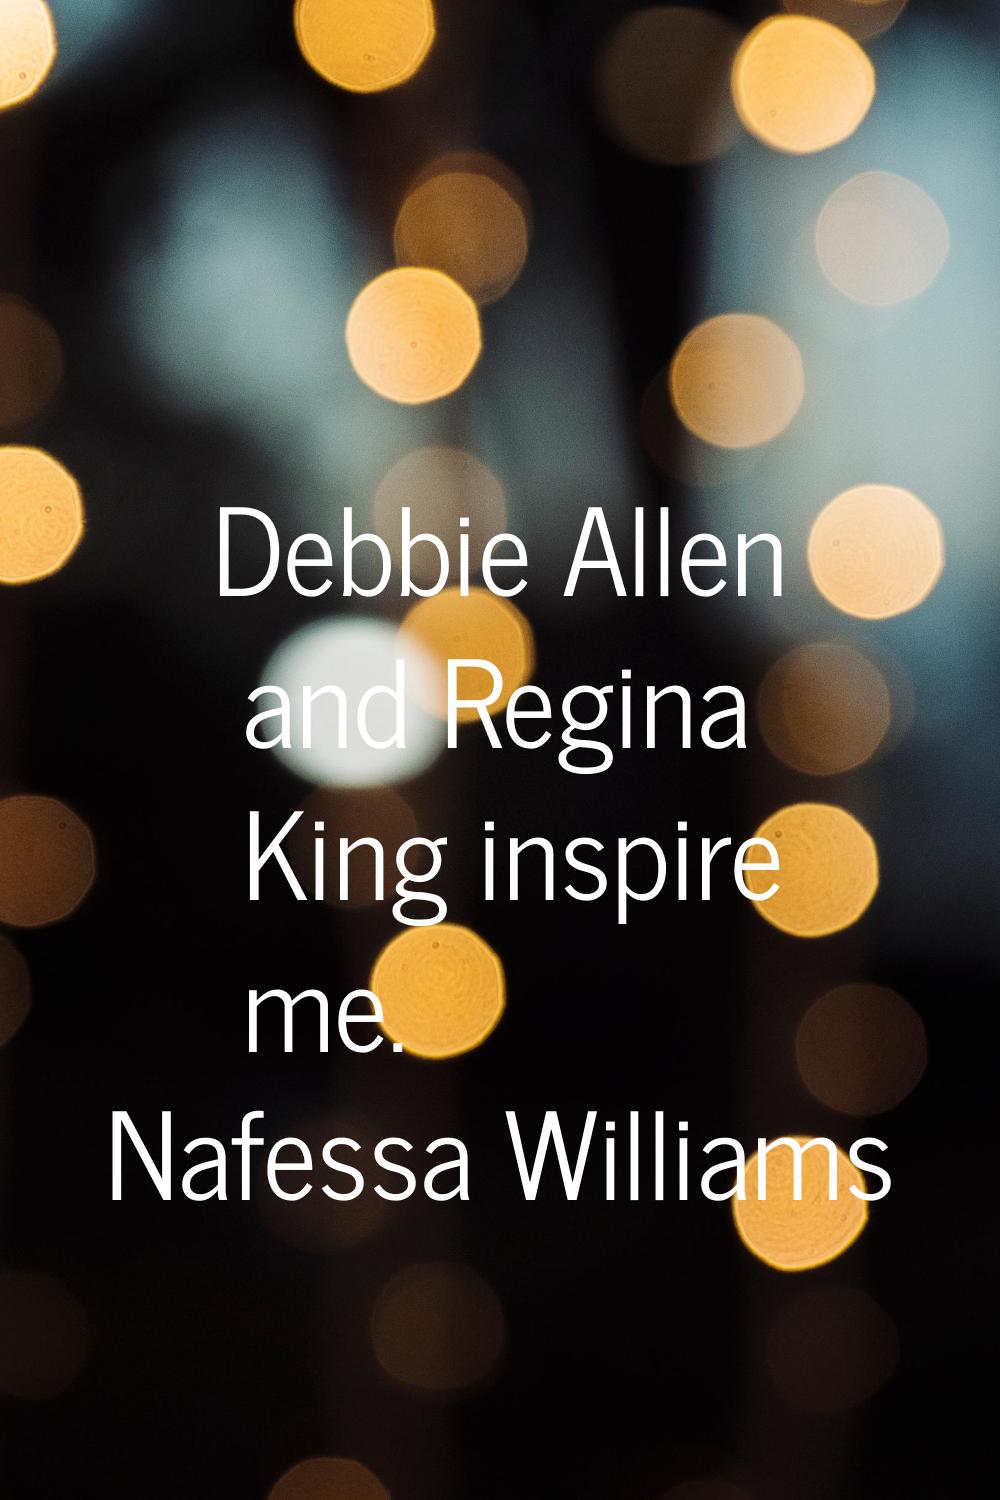 Debbie Allen and Regina King inspire me.